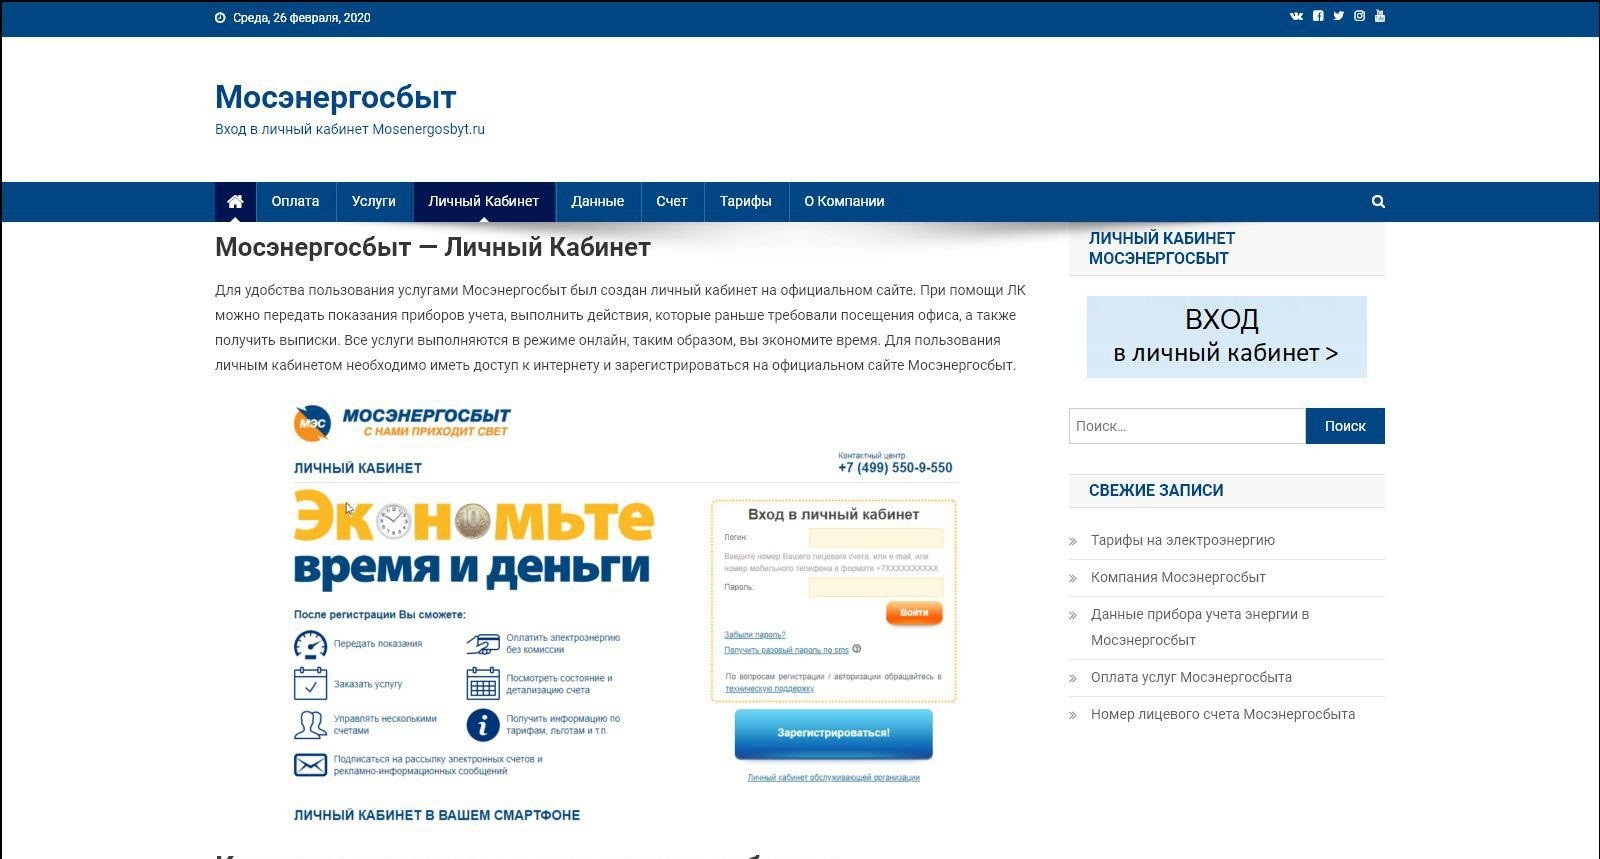 Личный кабинет "Мосэнергосбыт": как зарегистрироваться, проверить задолженность